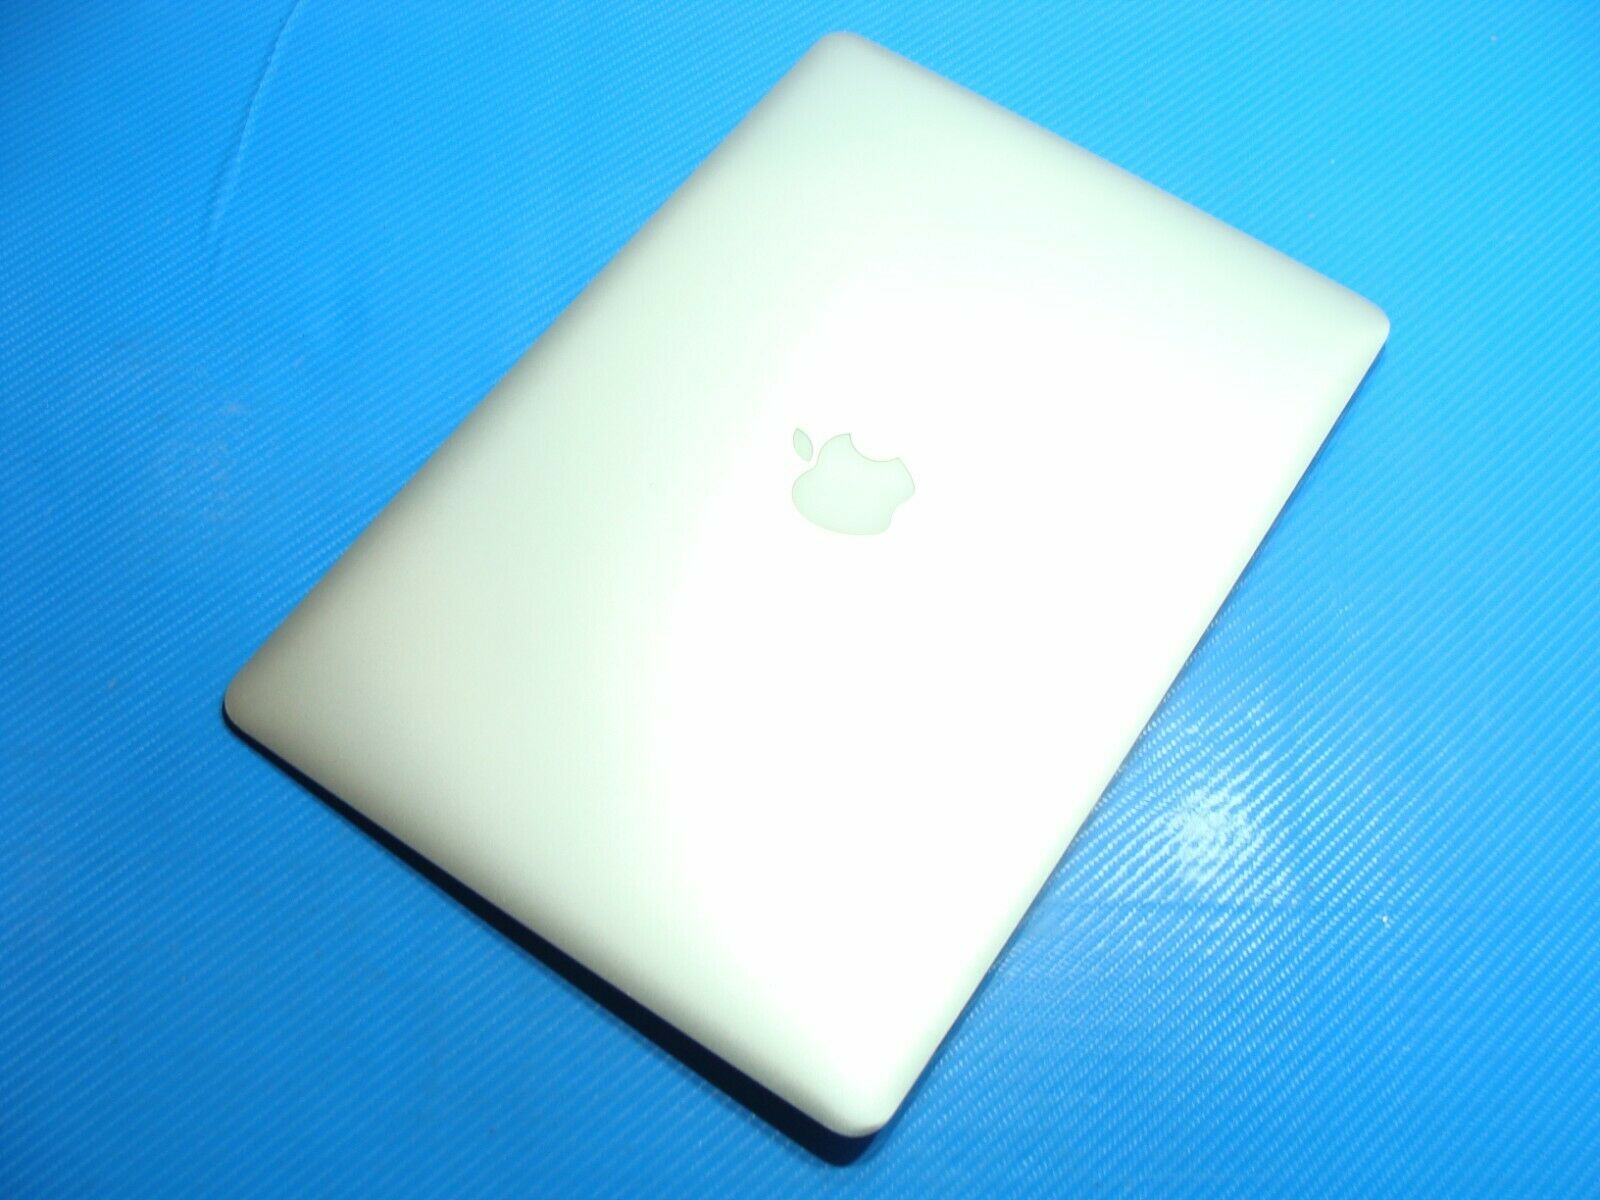 MacBook Pro A1398 ME294LL/A 2013 15